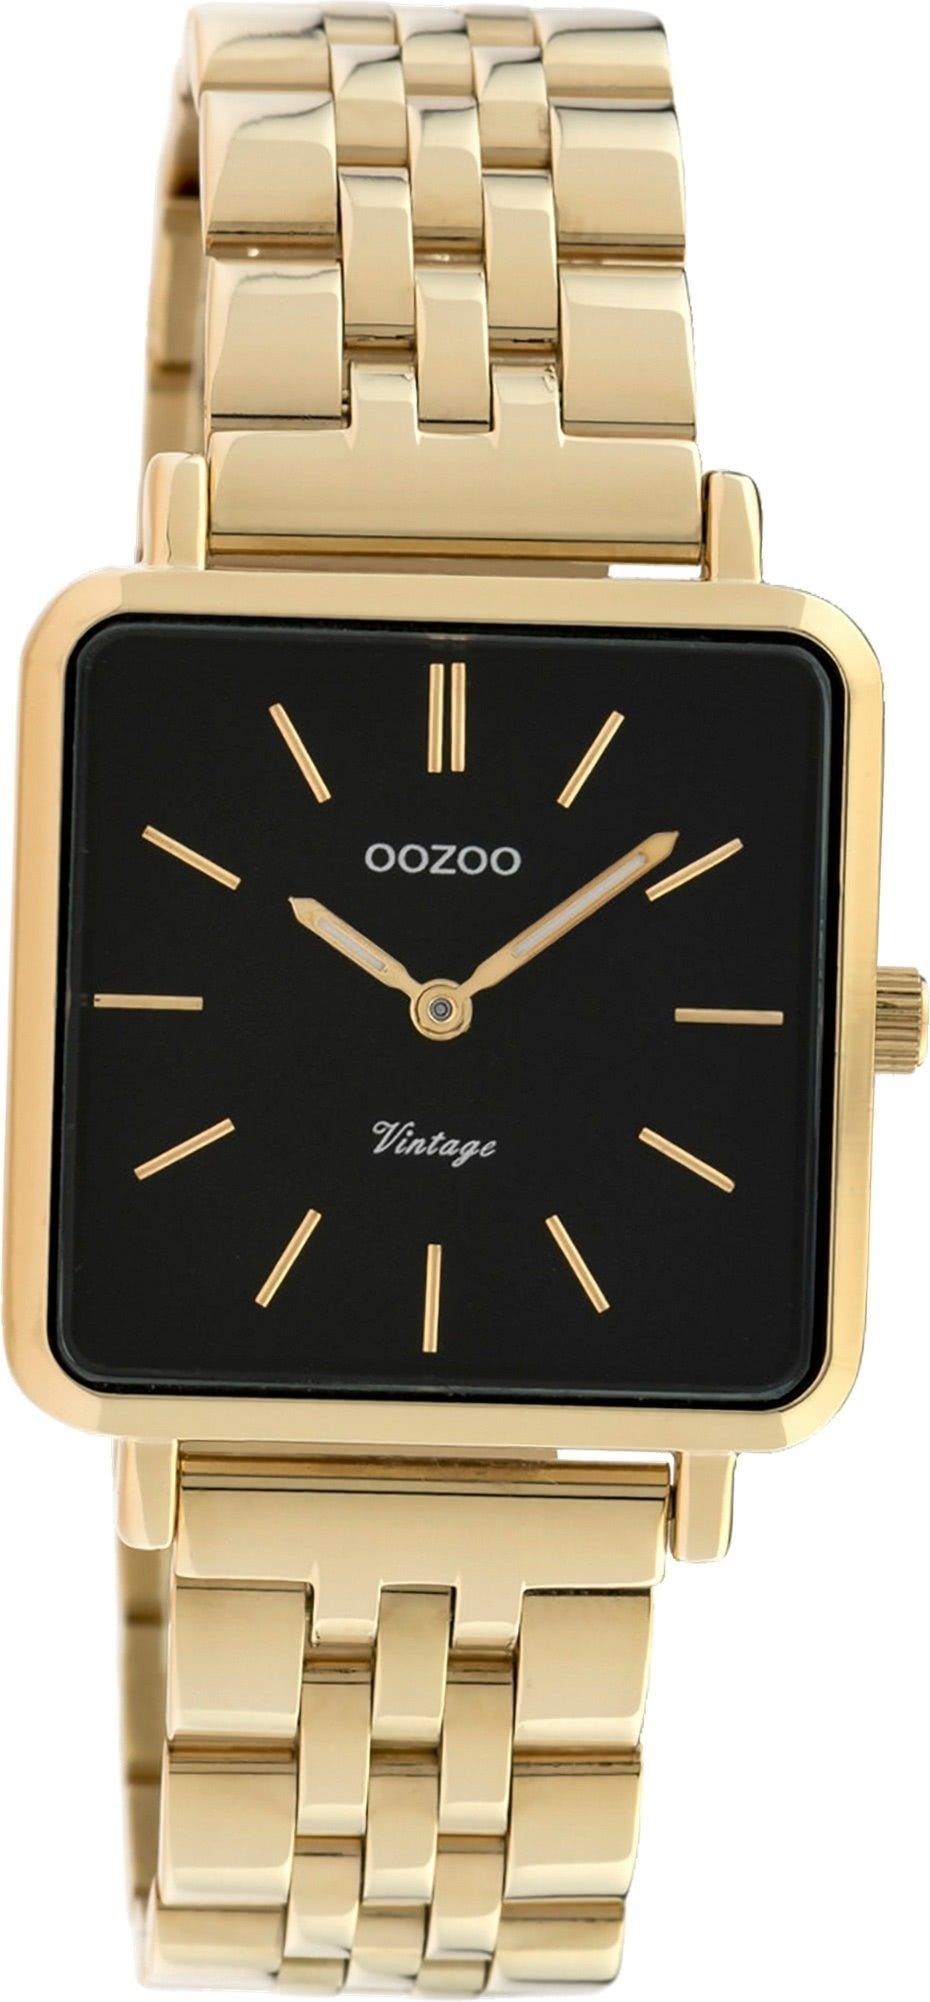 OOZOO Quarzuhr Oozoo Edelstahl Damen Uhr C9957 Analog, Damenuhr Edelstahlarmband gold, eckiges Gehäuse, klein (ca. 29mm)